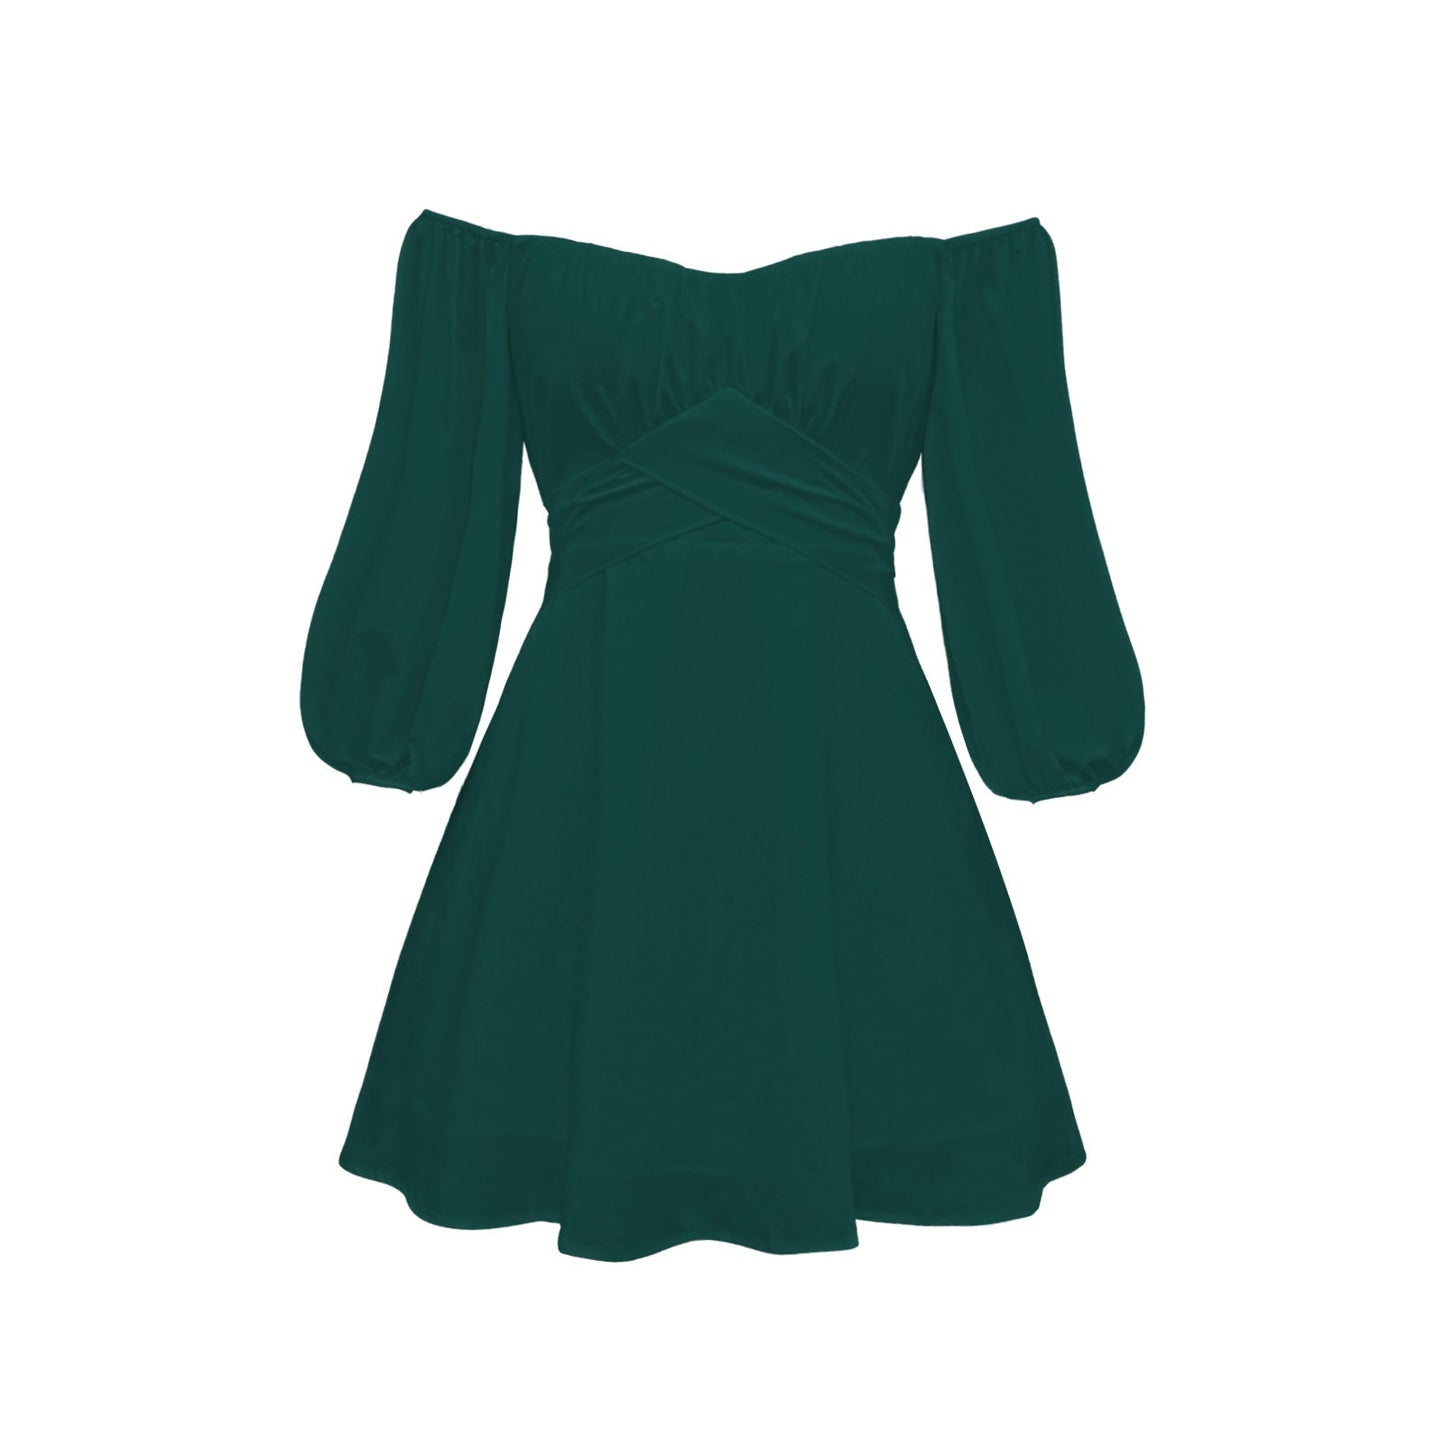 aminibi- Solid Color Off Shoulder Dress